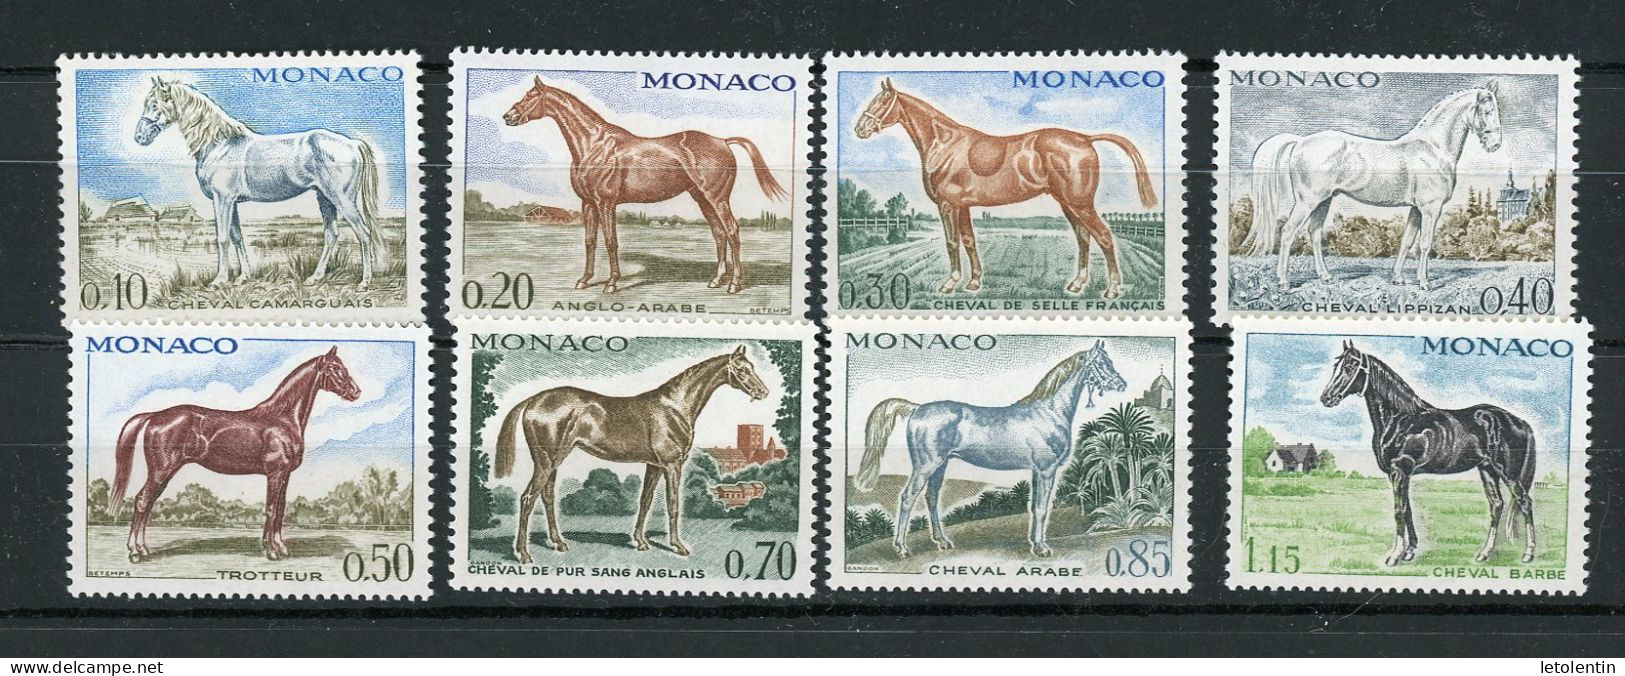 MONACO: CHEVAUX - N° Yvert 831/838** - Unused Stamps